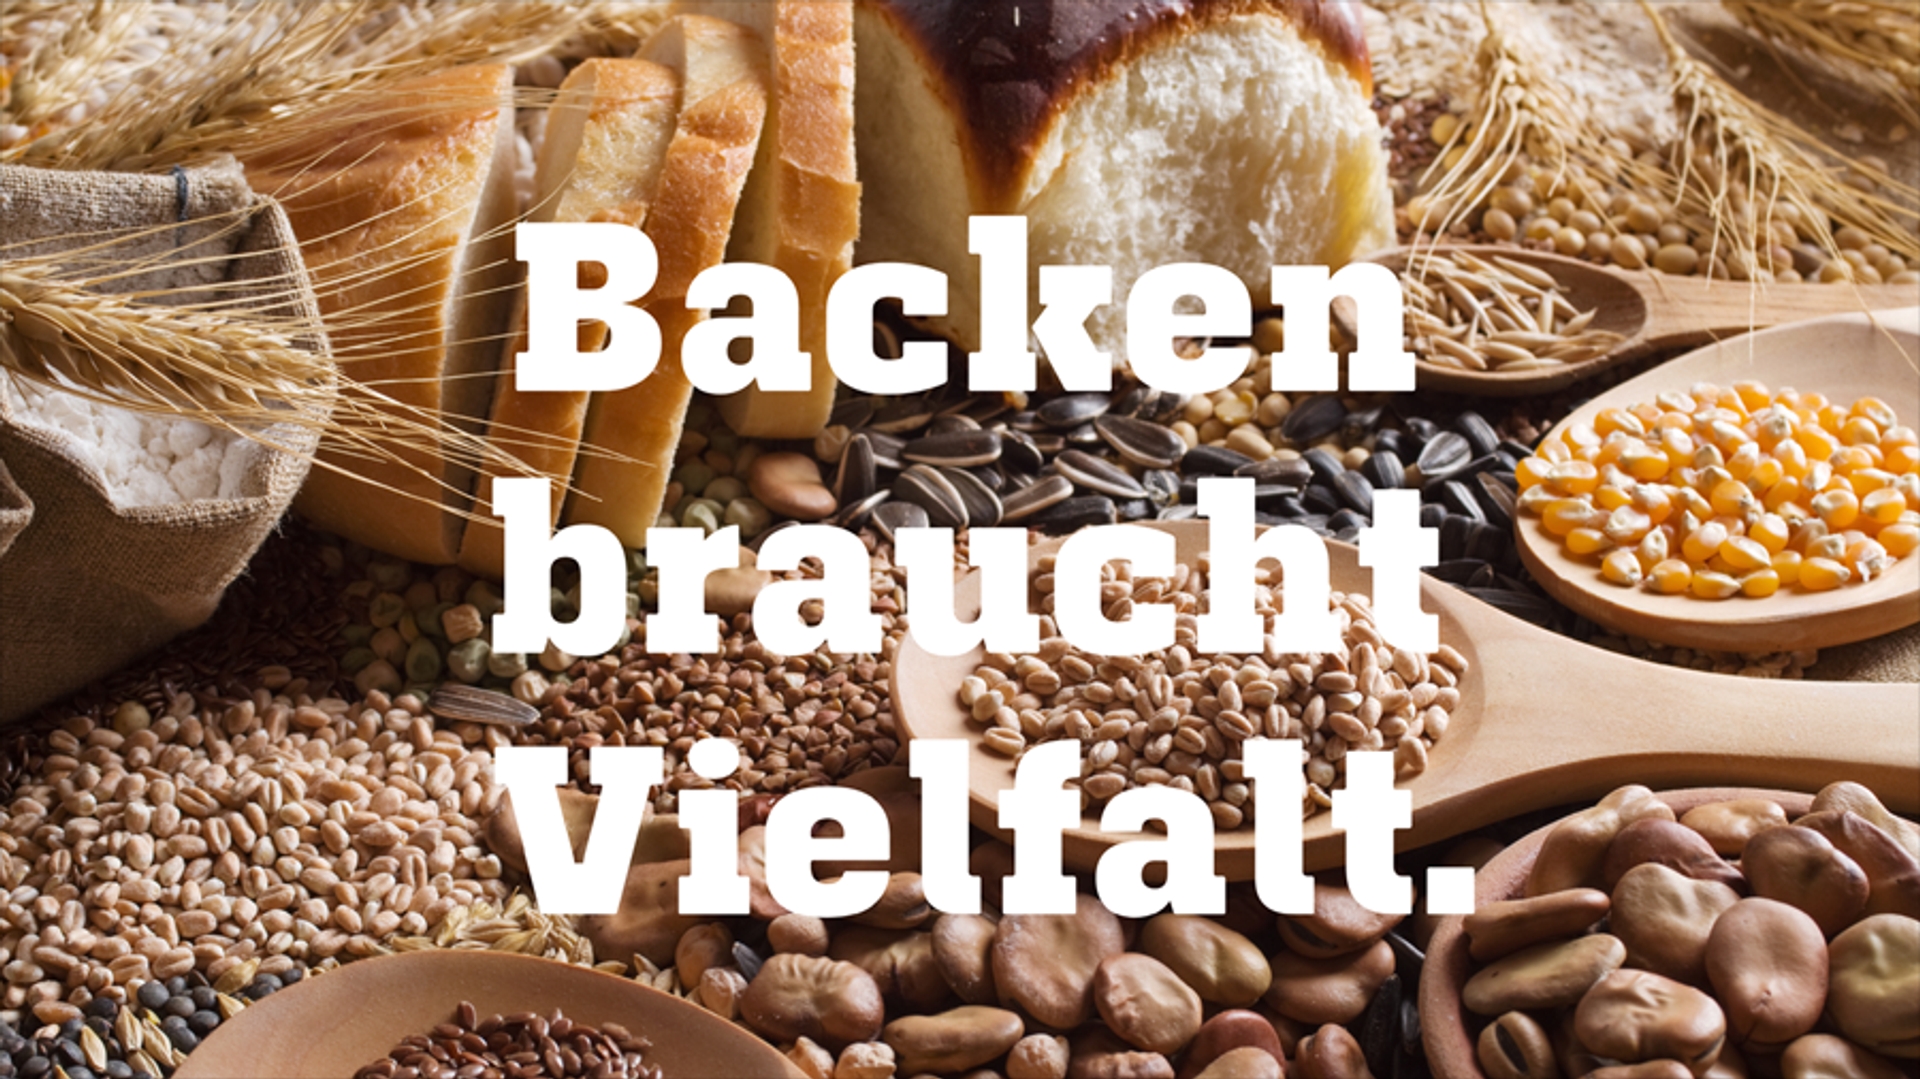 Afbeelding van Duitse bakkers spreken zich uit tegen extreemrechts en vóór democratie en diversiteit